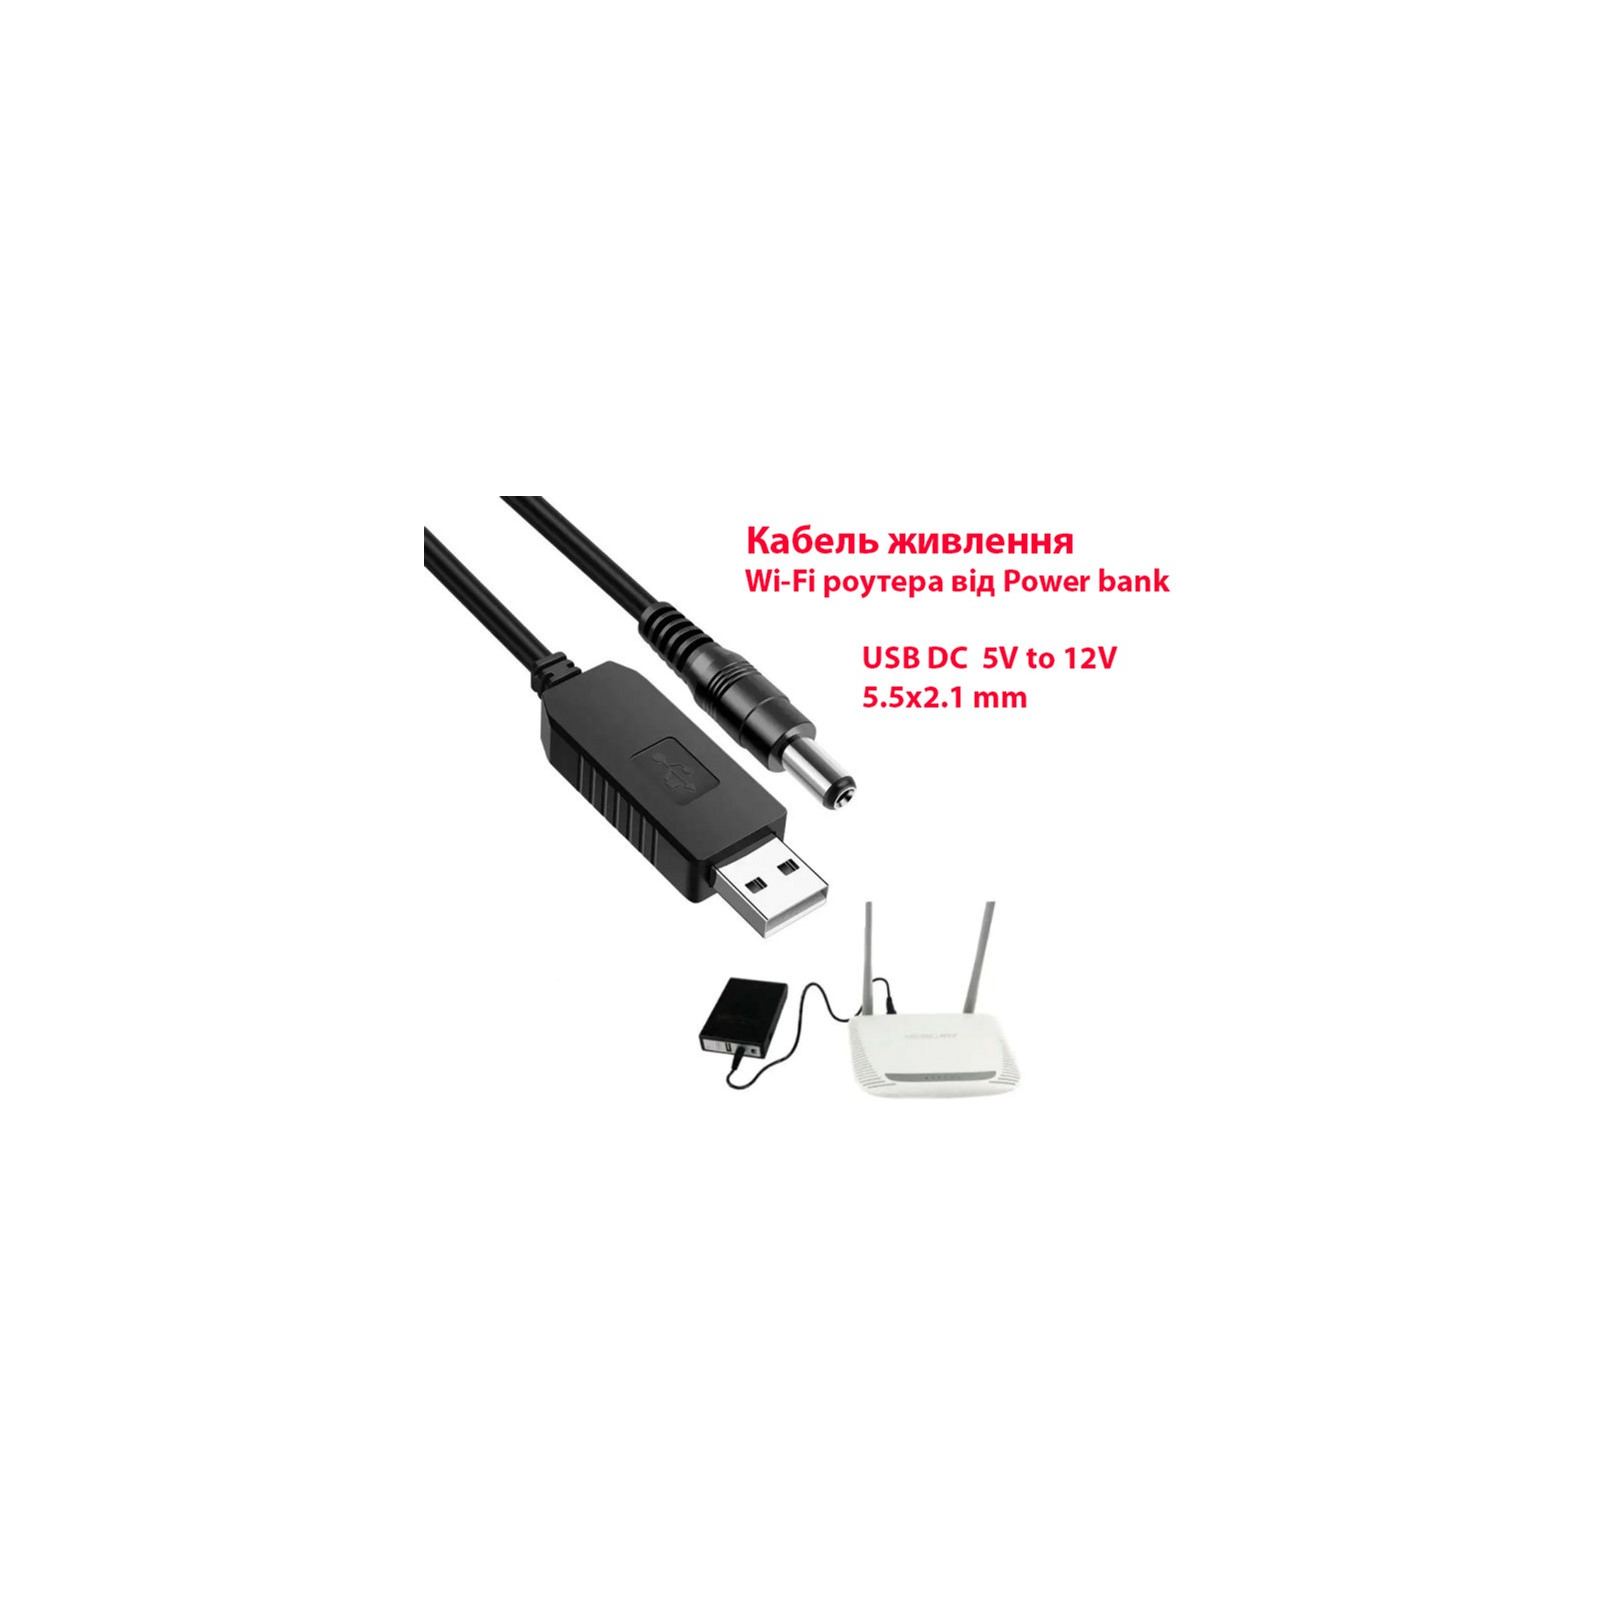 Кабель питания USB 2.0 AM to DC 5.5 х 2.1 mm 1.0m 5V to 12V Dynamode (DM-USB-DC-5.5x2.1-12V) изображение 2